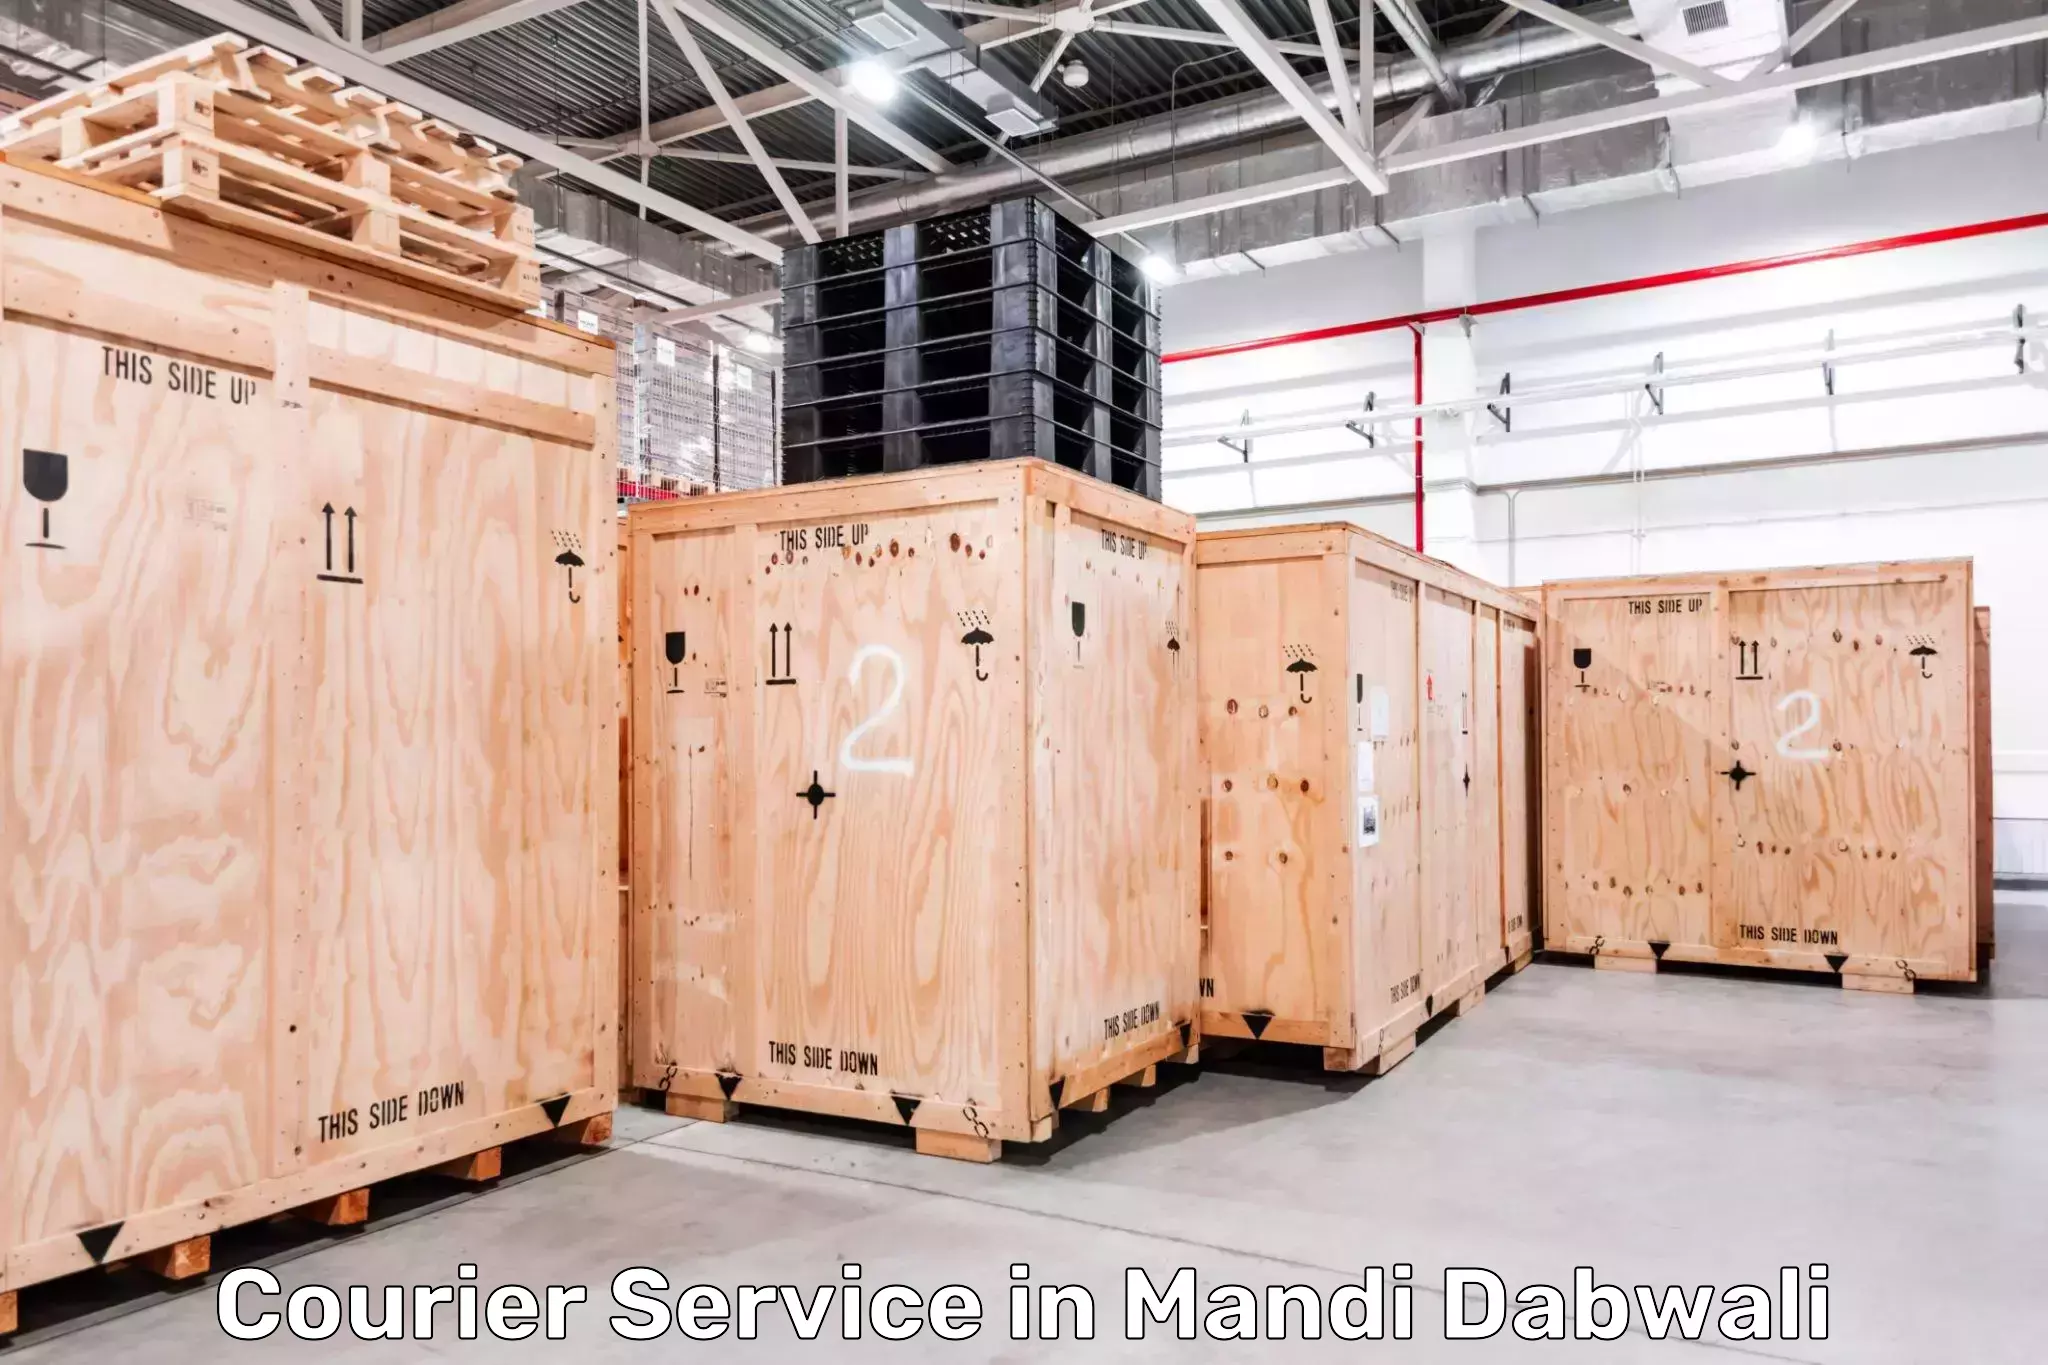 Logistics solutions in Mandi Dabwali